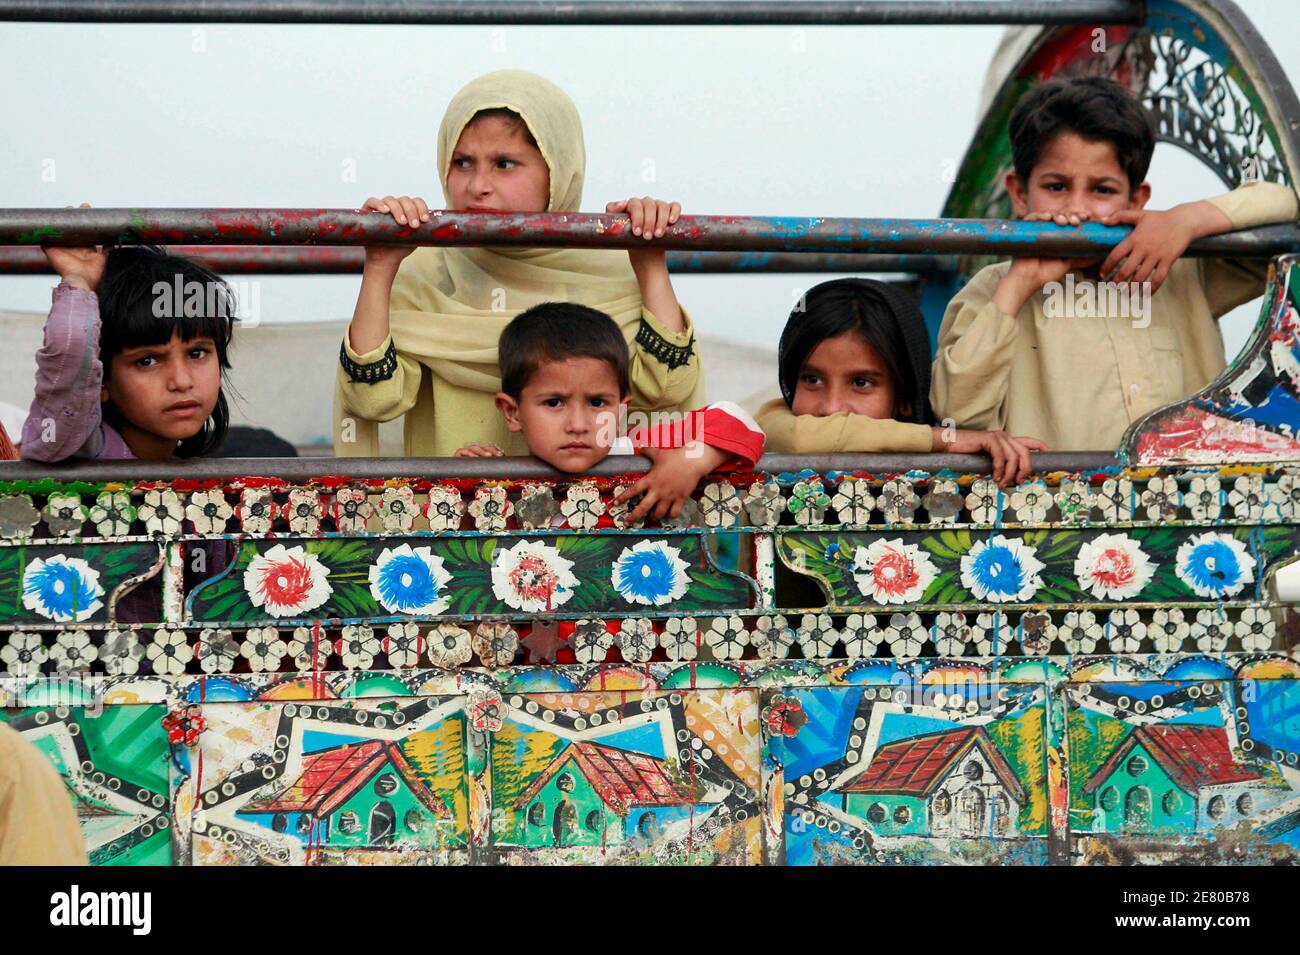 Intern vertriebene Kinder, die vor militärischen Operationen in Buner fliehen, sitzen in einem Van, als sie in einem UNHCR-Lager (Hochkommissariat für Flüchtlinge der Vereinten Nationen) im Distrikt Swabi ankommen, etwa 150 km (85 Meilen) nordwestlich von Pakistans Hauptstadt Islamabad, 7. Mai 2009. Sicherheitskräfte starteten am 26. April eine Offensive, um Militante aus zwei Nachbarbezirken Swats, Dir und Buner, zu vertreiben.Seitdem hat sich die Sicherheit in Swat stark verschlechtert. REUTERS/Faisal Mahmood (PAKISTAN SOCIETY POLITICS CONFLICT) Stockfoto